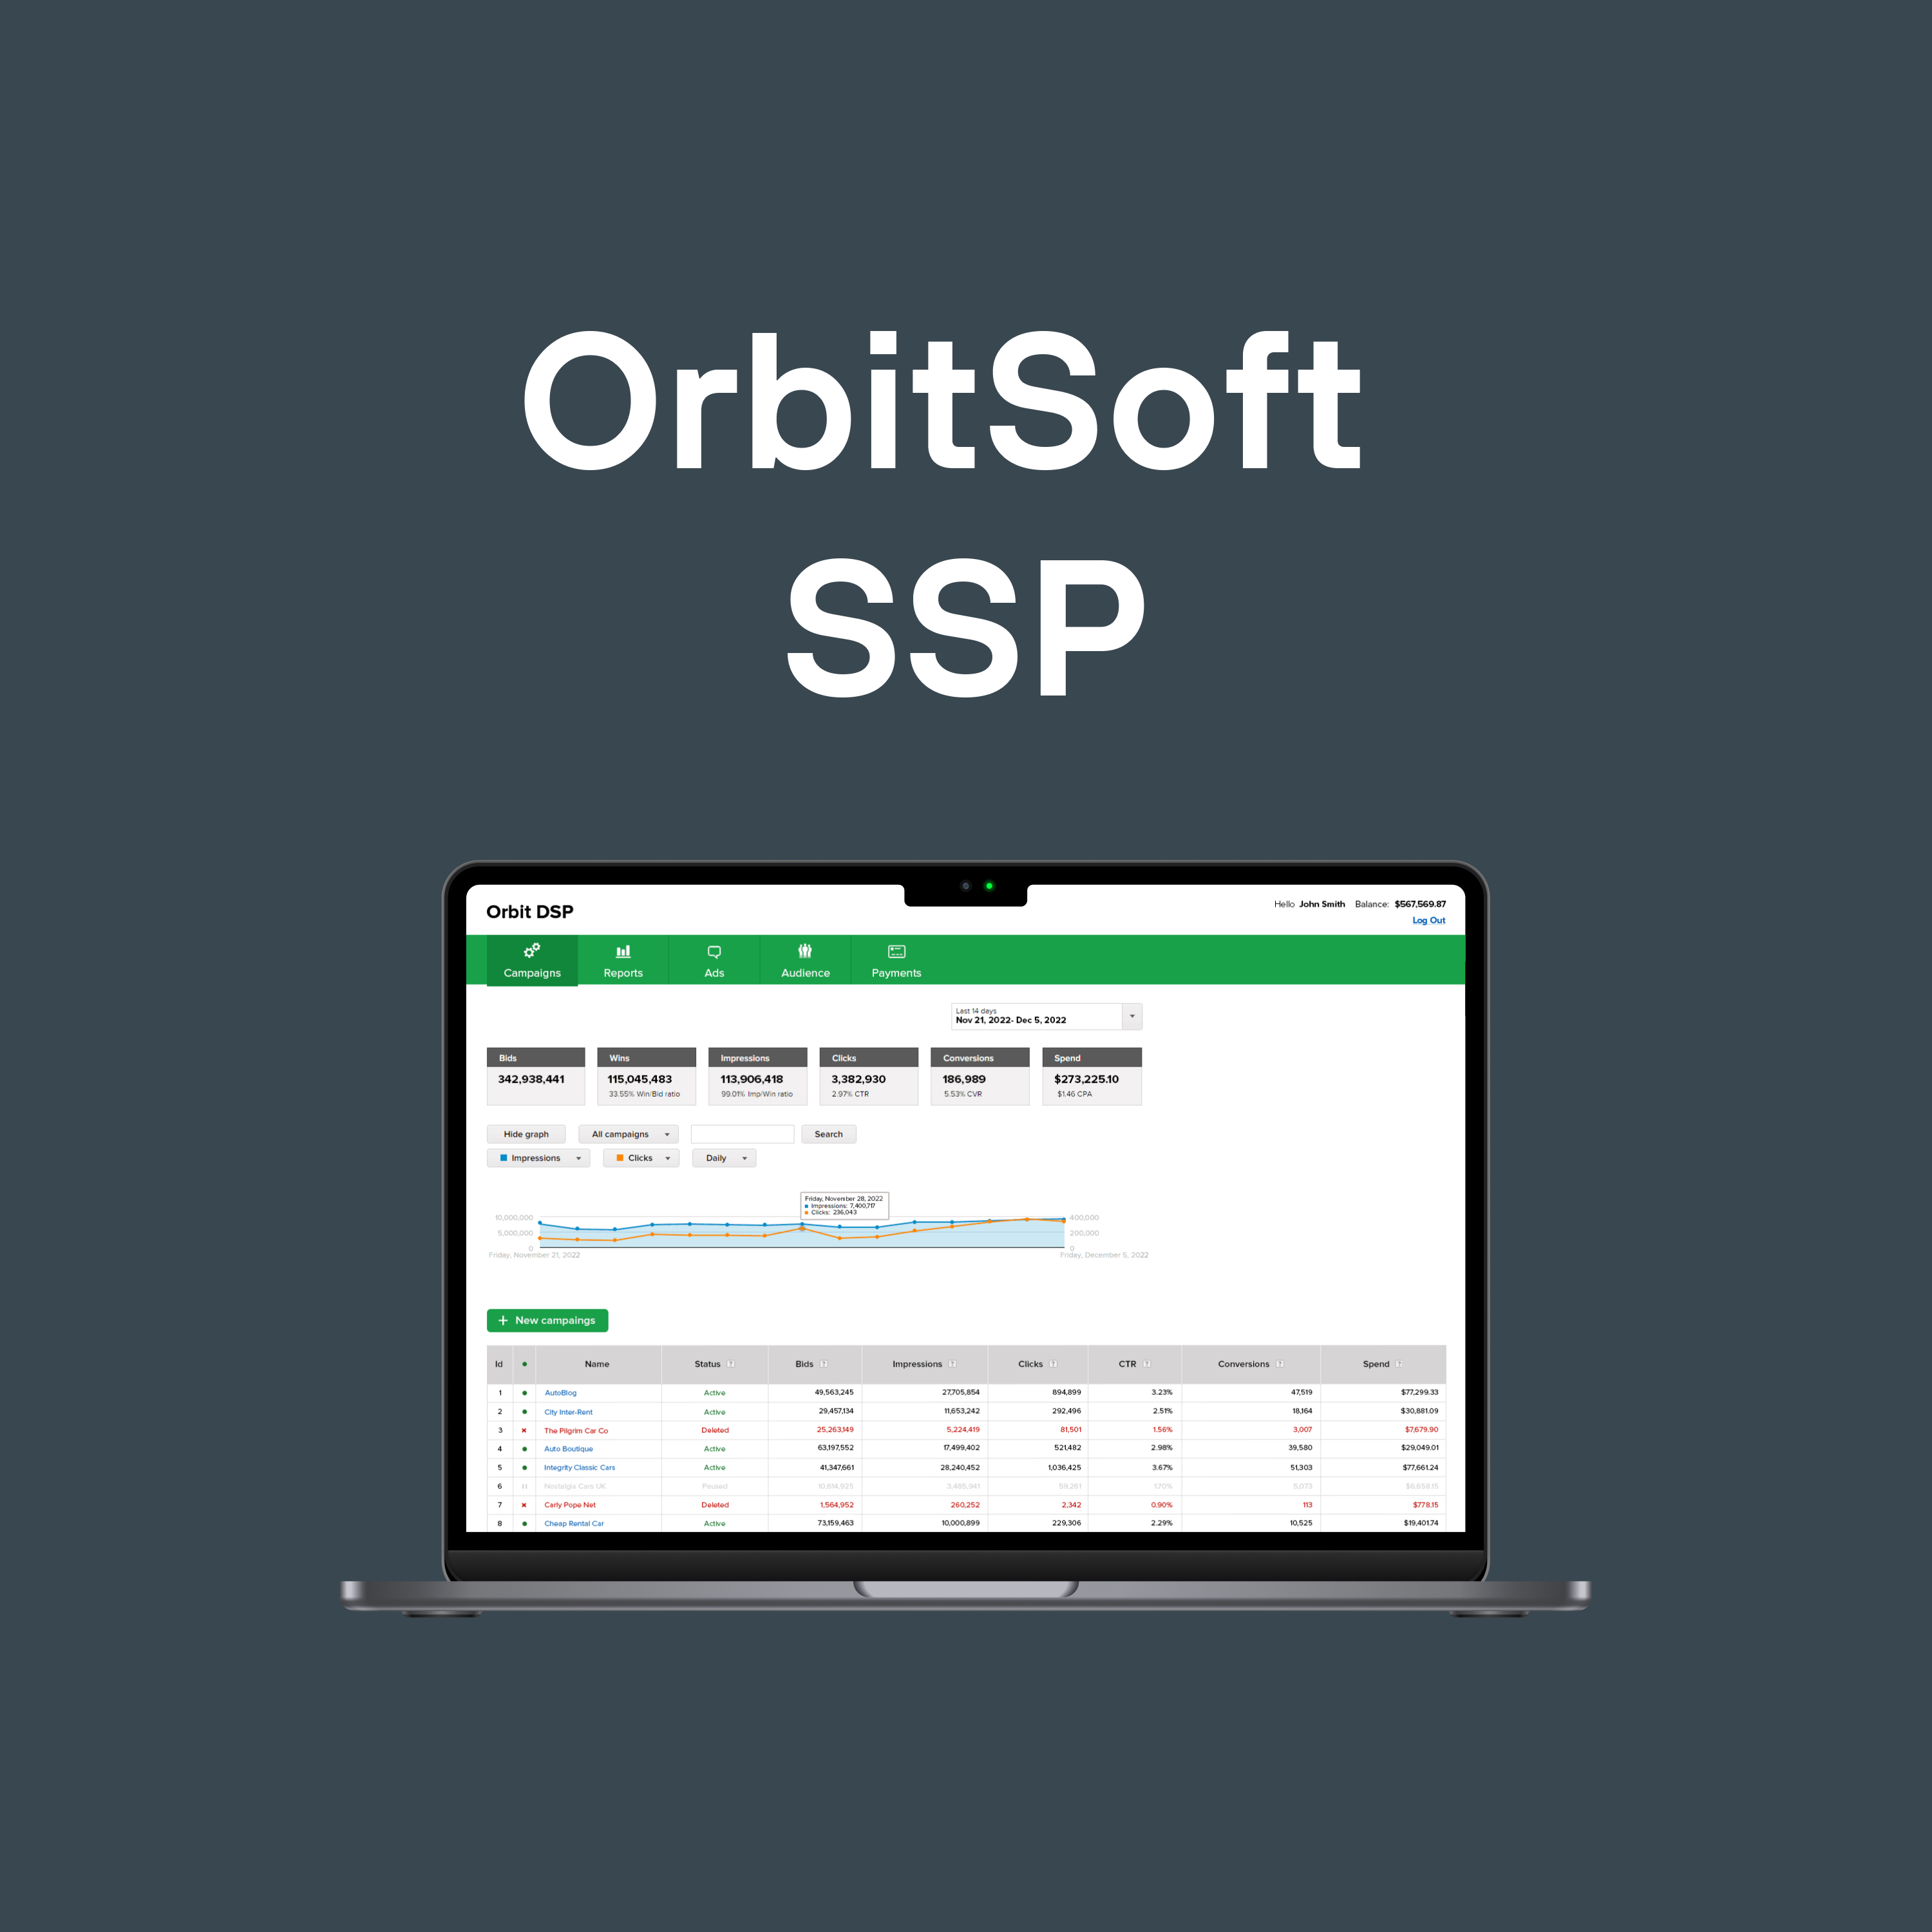 SSP — Supply Side Platform